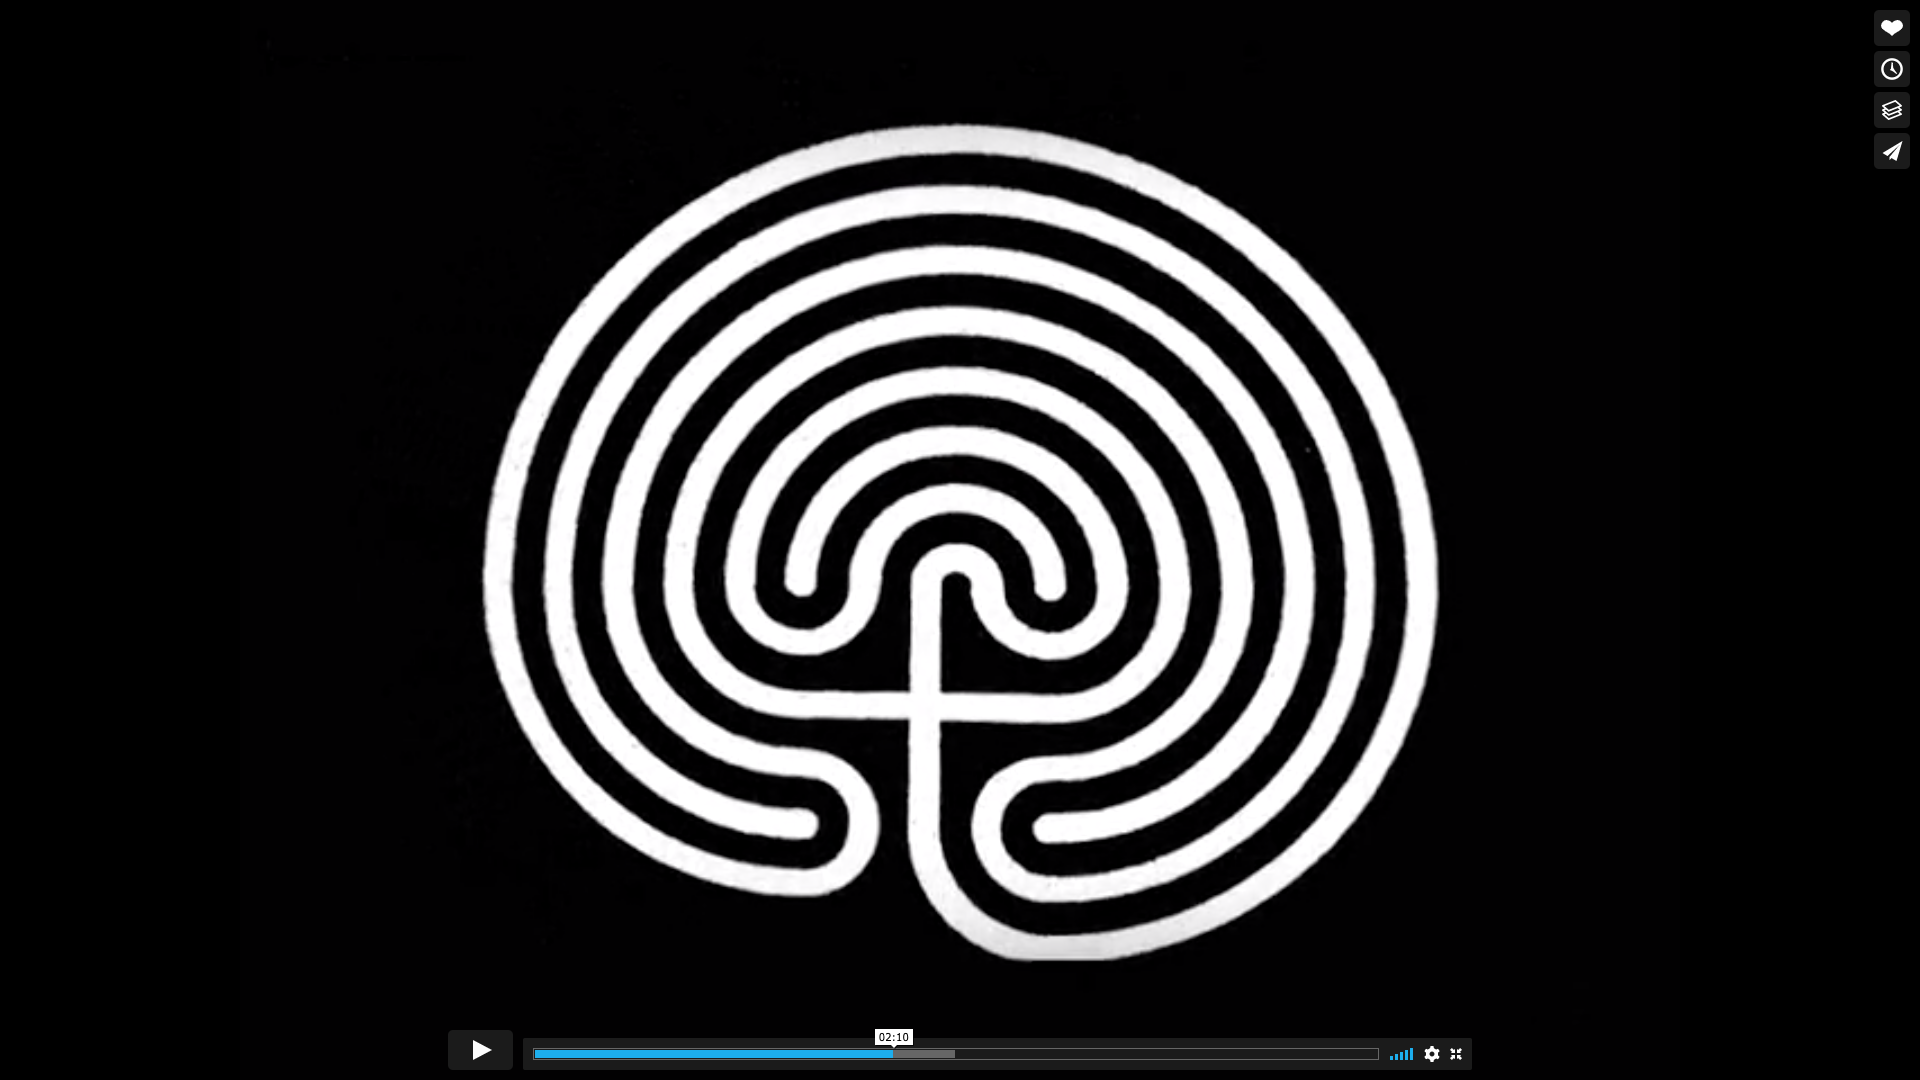 Sulle tracce di Dan - I simboli - Il labirinto - aurorachiara.com